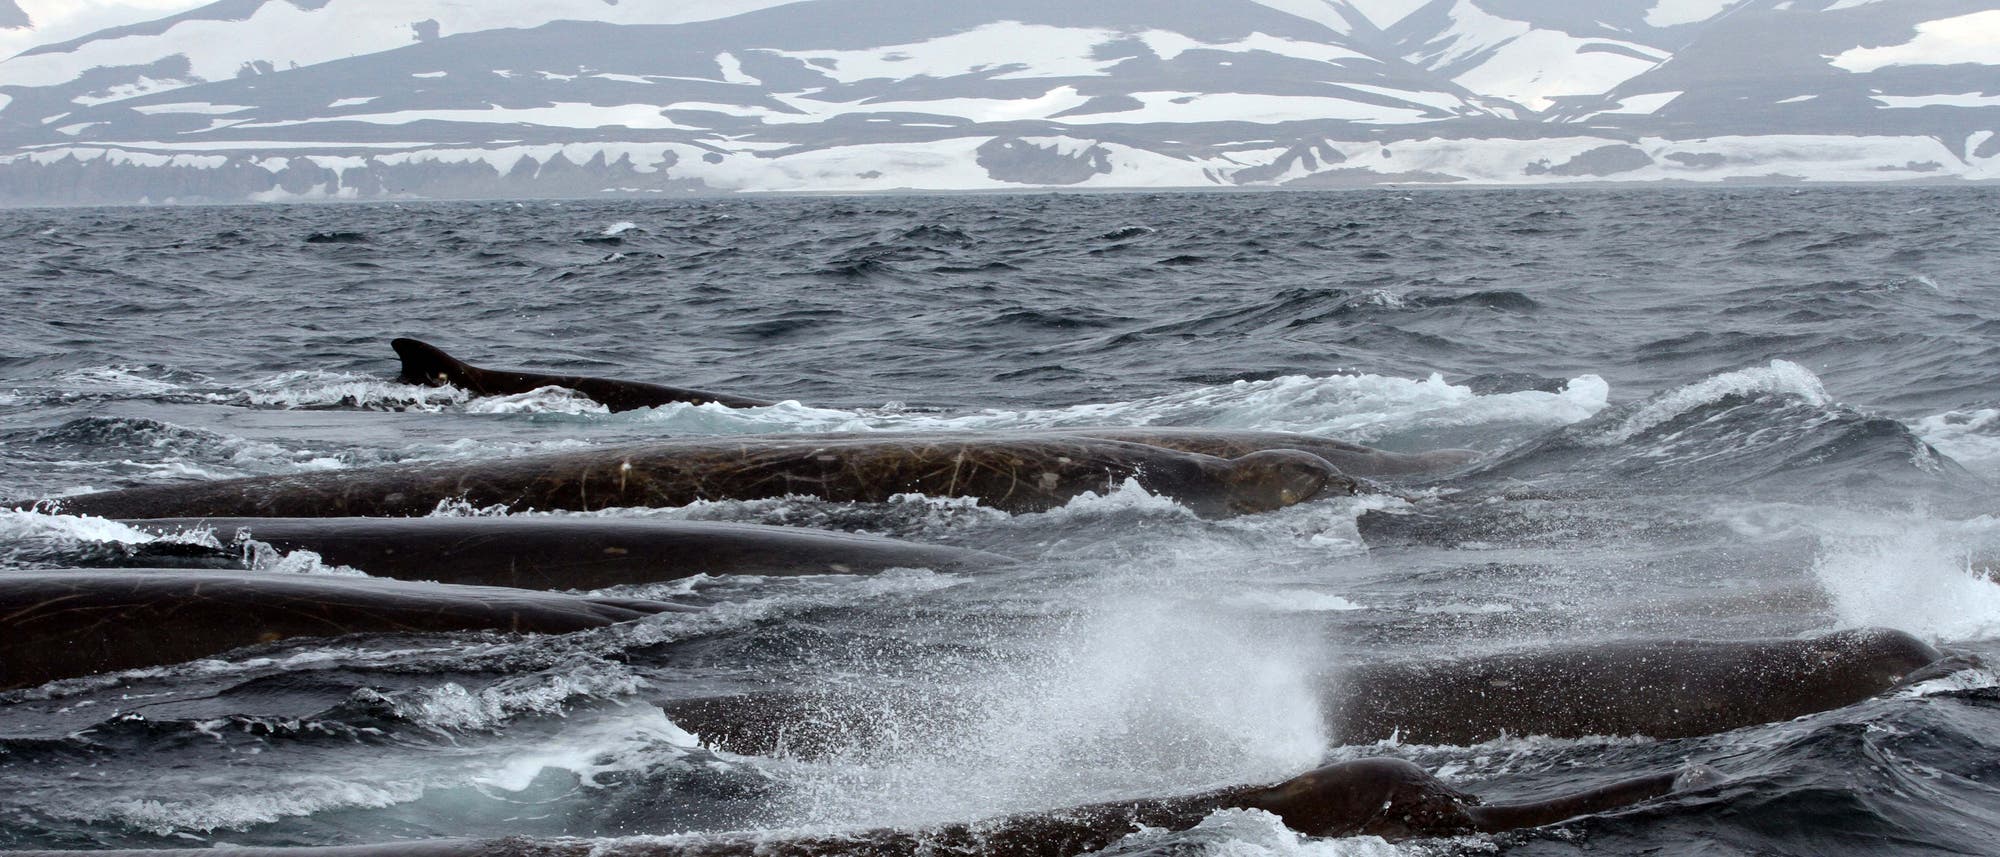 Eine Gruppe Schnabelwale taucht im Meer vor den Commander Islands auf. Der Himmel ist grau, das Wasser düster